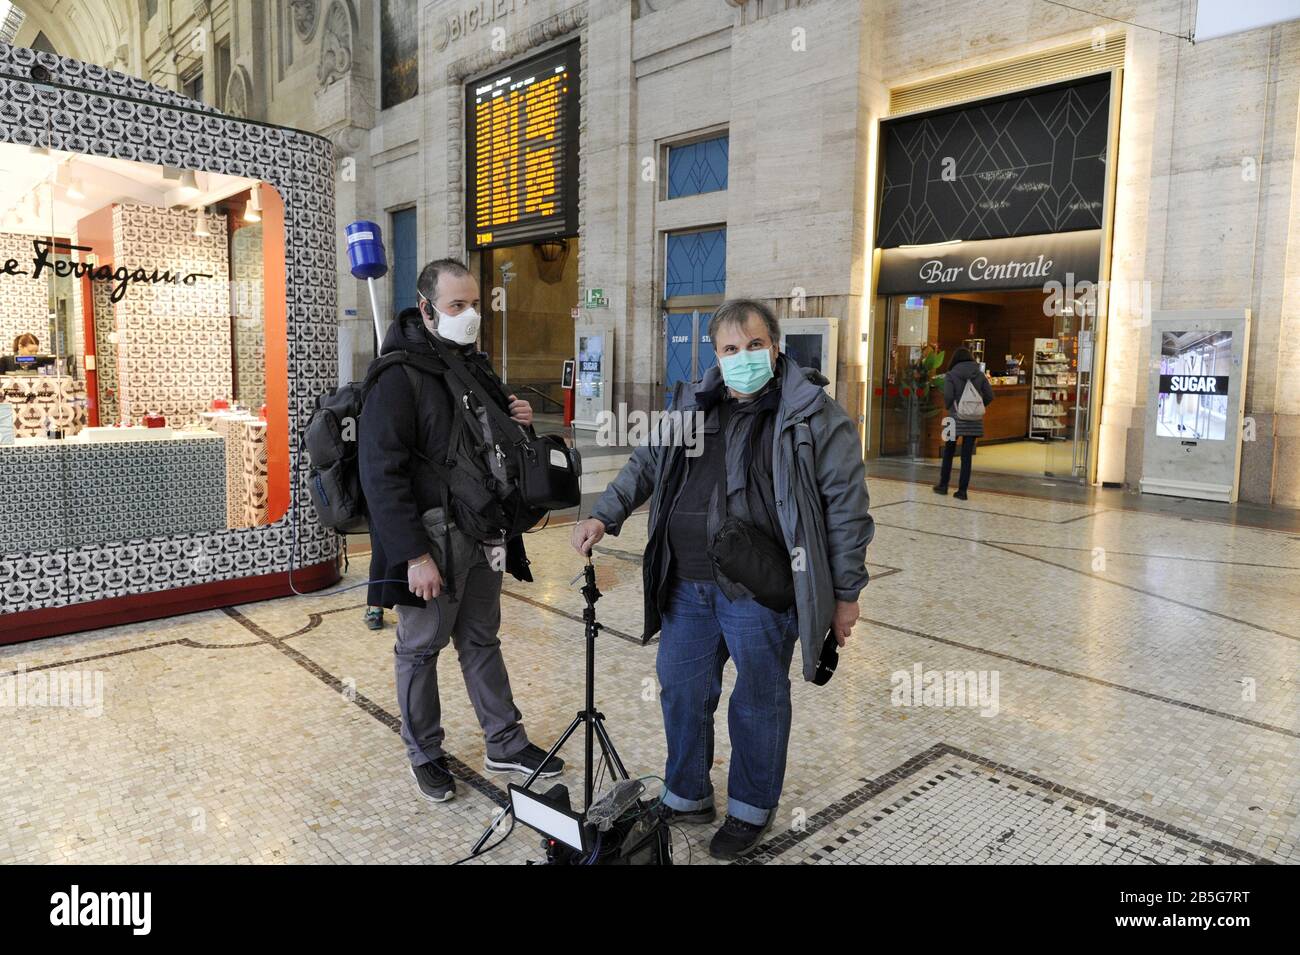 Mailand, 8. März 2020, Mailand Hauptbahnhof halb verlassen nach dem Regierungsdekret, der weite Teile Norditaliens isoliert, um die Epidemie von Coronavirus 19 zu stoppen Stockfoto